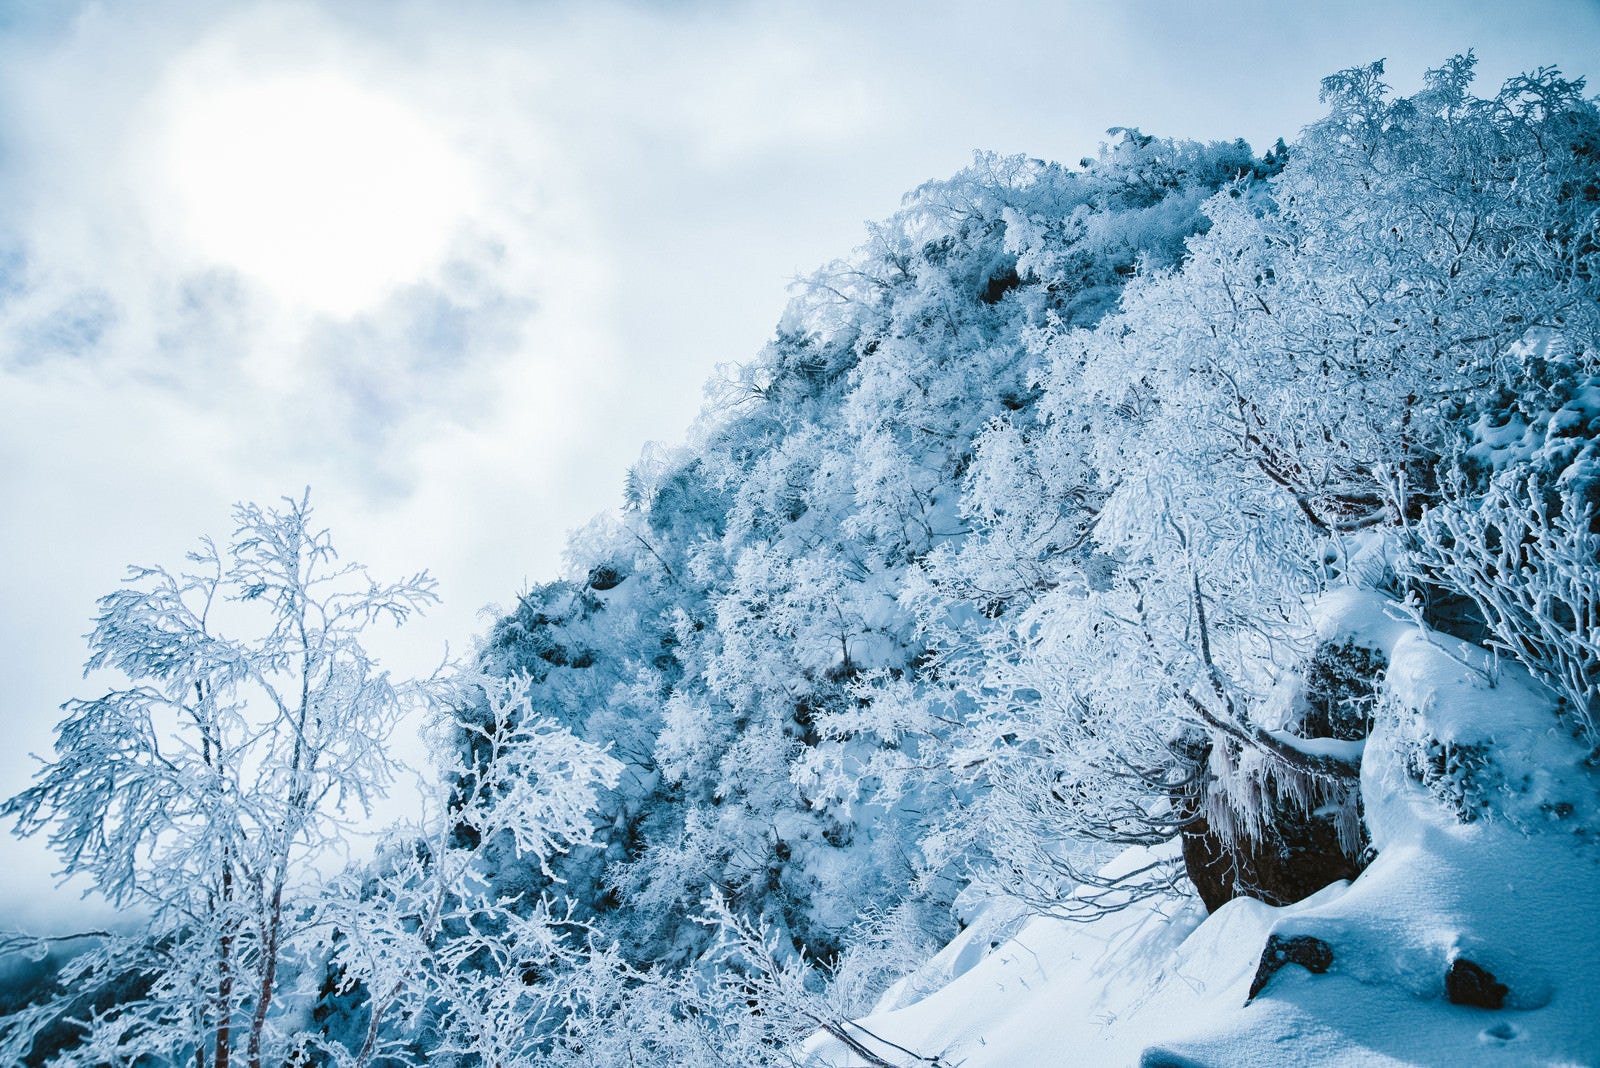 「幻想的な樹氷の白銀の世界」の写真